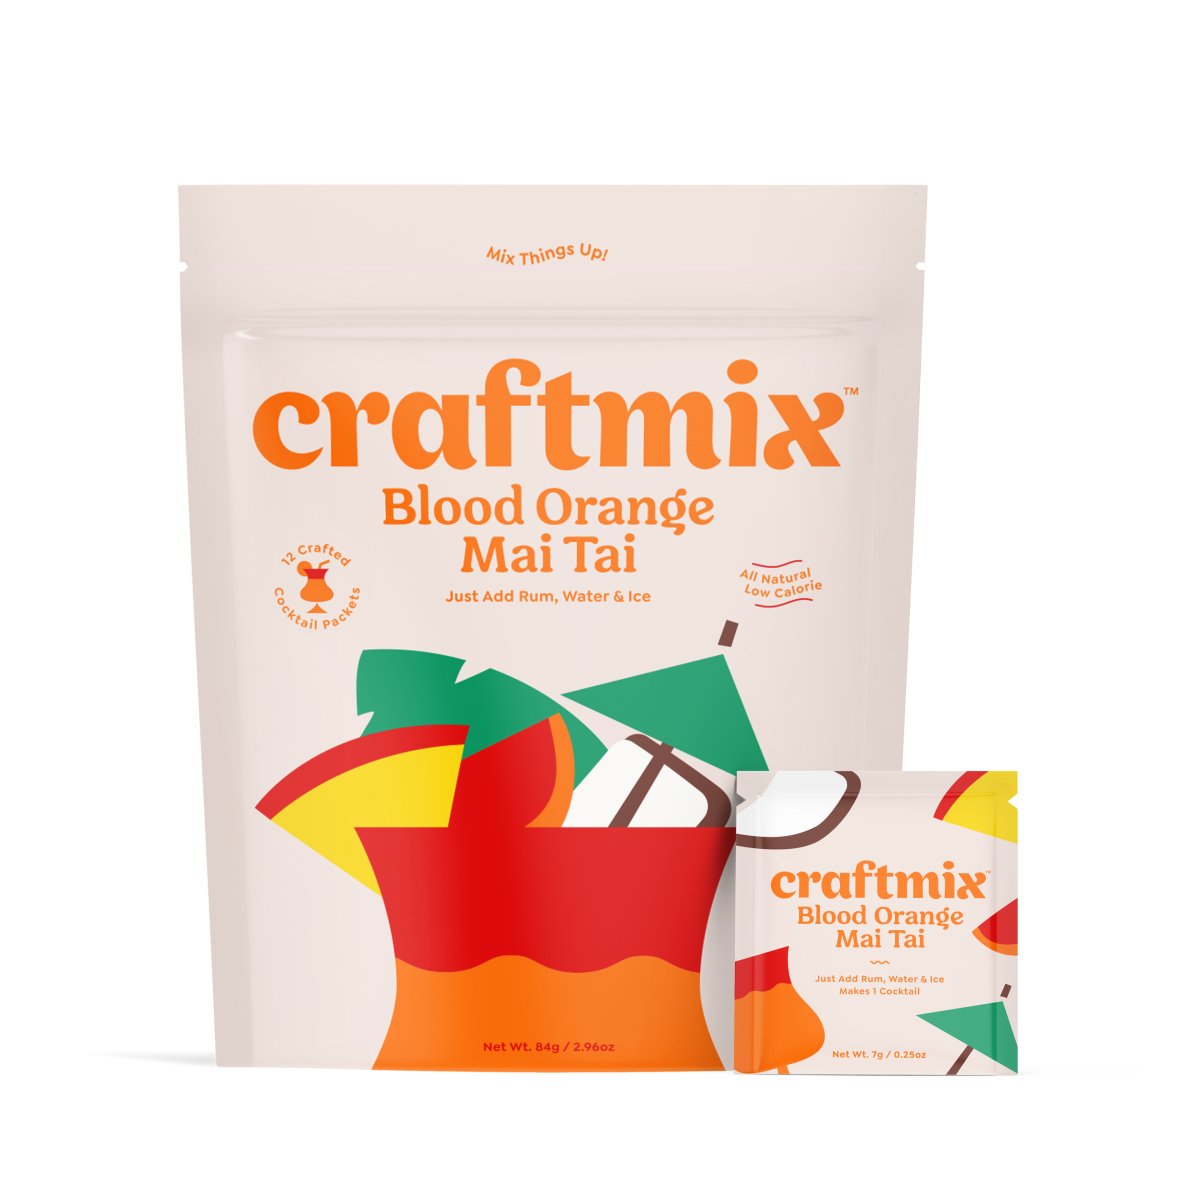 Craftmix Blood Orange Mai Tai, 12 Pack - lily & onyx